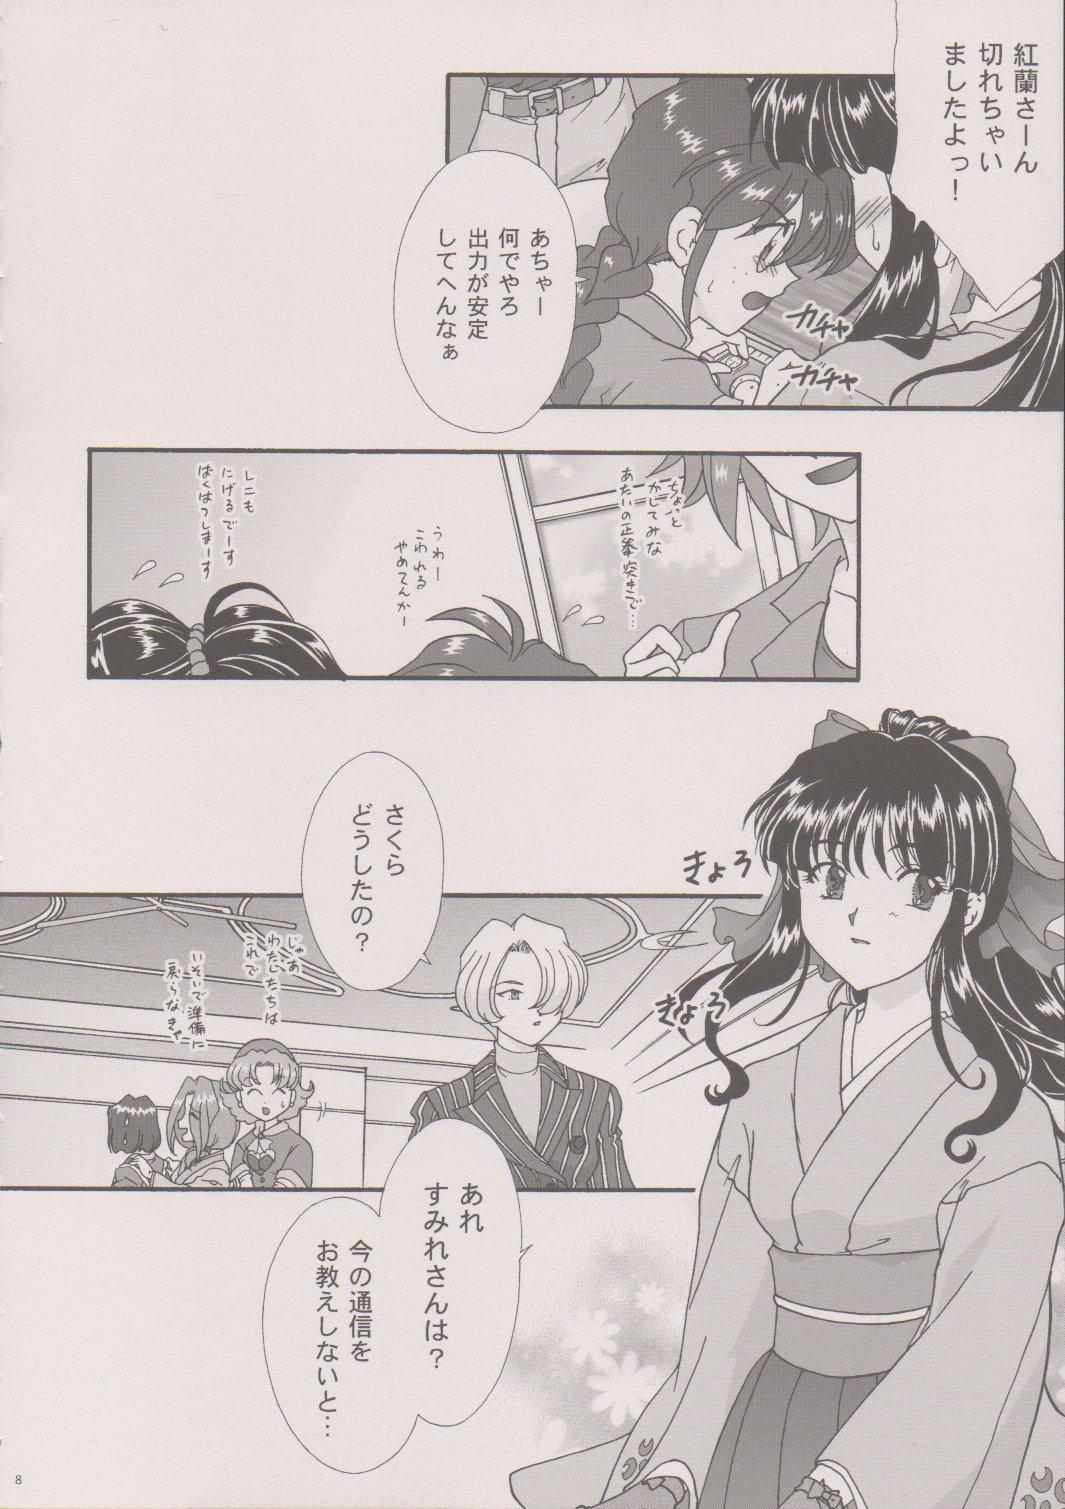 [TSK (Fuuga Utsura)] Maihime ~Karen~ 6 Teito Yori. (Sakura Wars) 6